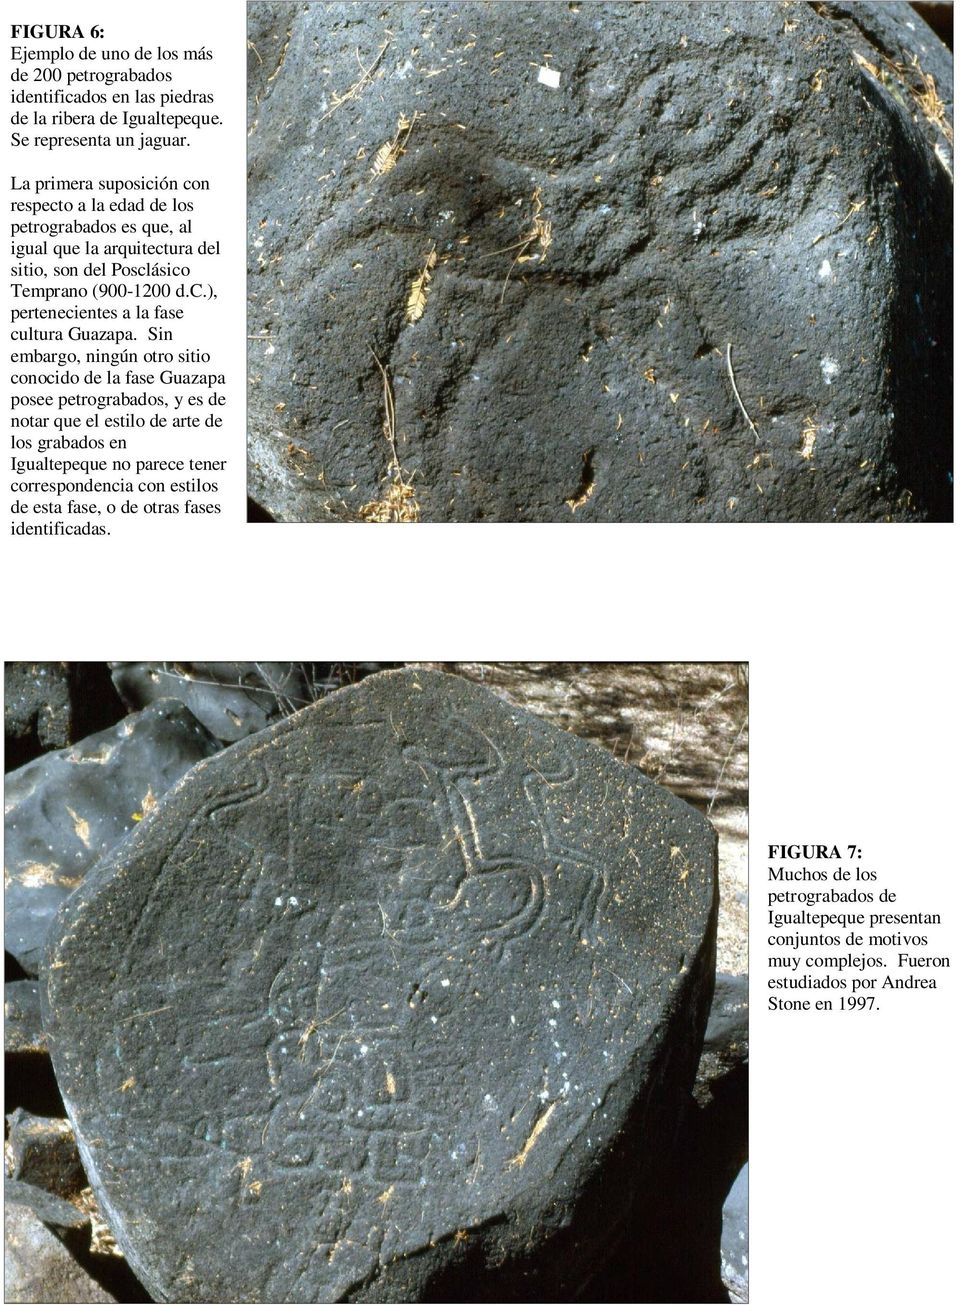 Sin embargo, ningún otro sitio conocido de la fase Guazapa posee petrograbados, y es de notar que el estilo de arte de los grabados en Igualtepeque no parece tener correspondencia